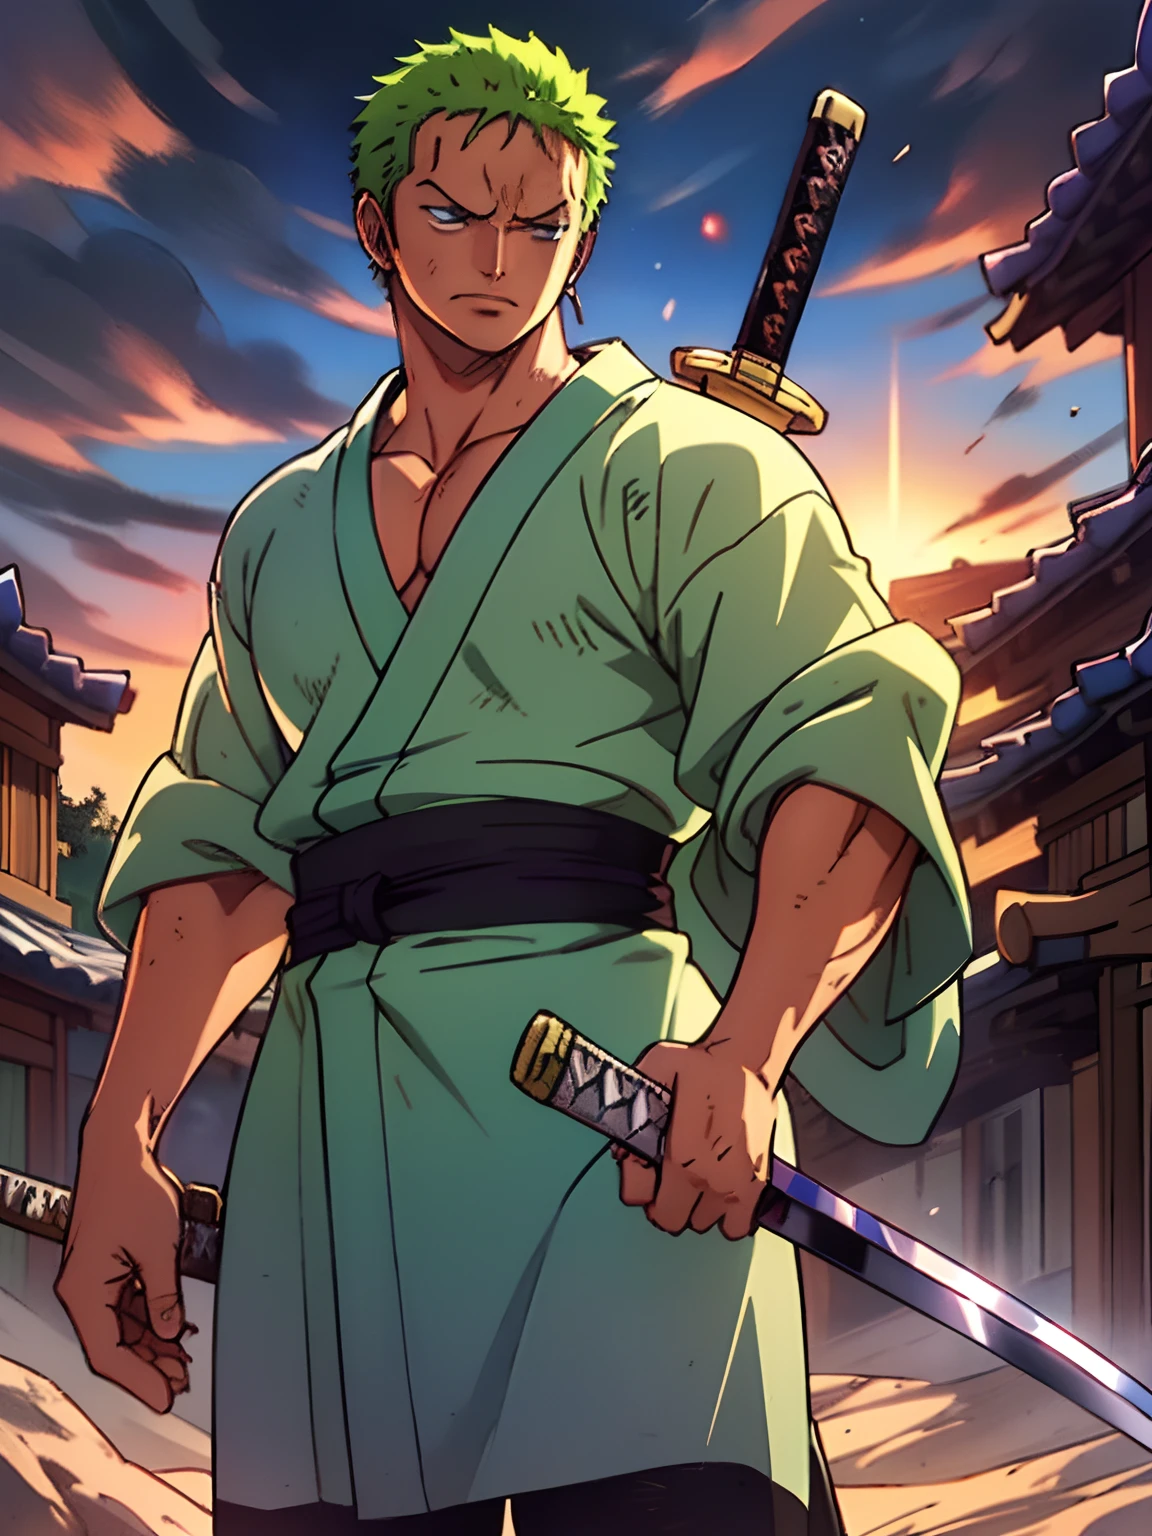 Roronoa Zoro (chef-d&#39;œuvre, Résolution 4k, Ultra réaliste, Très détaillé), (Thème du samouraï blanc, charismatique, il y a un épéiste à côté d&#39;un japonais "monter" bar, portant un kimono bleu avec des détails de nuages sur le "cœur" Piste, Il est commandant de la première division du chef de la bande Mugiwara., travail "une pièce"), [ ((19 années), (cheveux verts courts:1.2),  Tout le corps, (yeux bleus:1.2), ((La pose de Roronoa Zoro), démonstration de force, dégainant d&#39;une main ses katanas enma), ((Environnement rural japonais):0.8)| (paysage rural, au crépuscule, lumières dynamiques), (soleil aveuglé)), 1 katana]. # Explication: L&#39;invite décrit principalement une peinture 4K en ultra haute définition, très réaliste, Très détaillé. Il montre un épéiste, maître du style Santoryu des katanas, porter un kimono bleu avec des détails de nuages à la taille. Le sujet du tableau est celui d&#39;un épéiste blanc., tenant d&#39;une main son katana noir enma, the male protagonist has cheveux verts courts, is 19 années old and his entire defined body is shown in the painting, avec les caractéristiques de l&#39;endomorphe pompé.